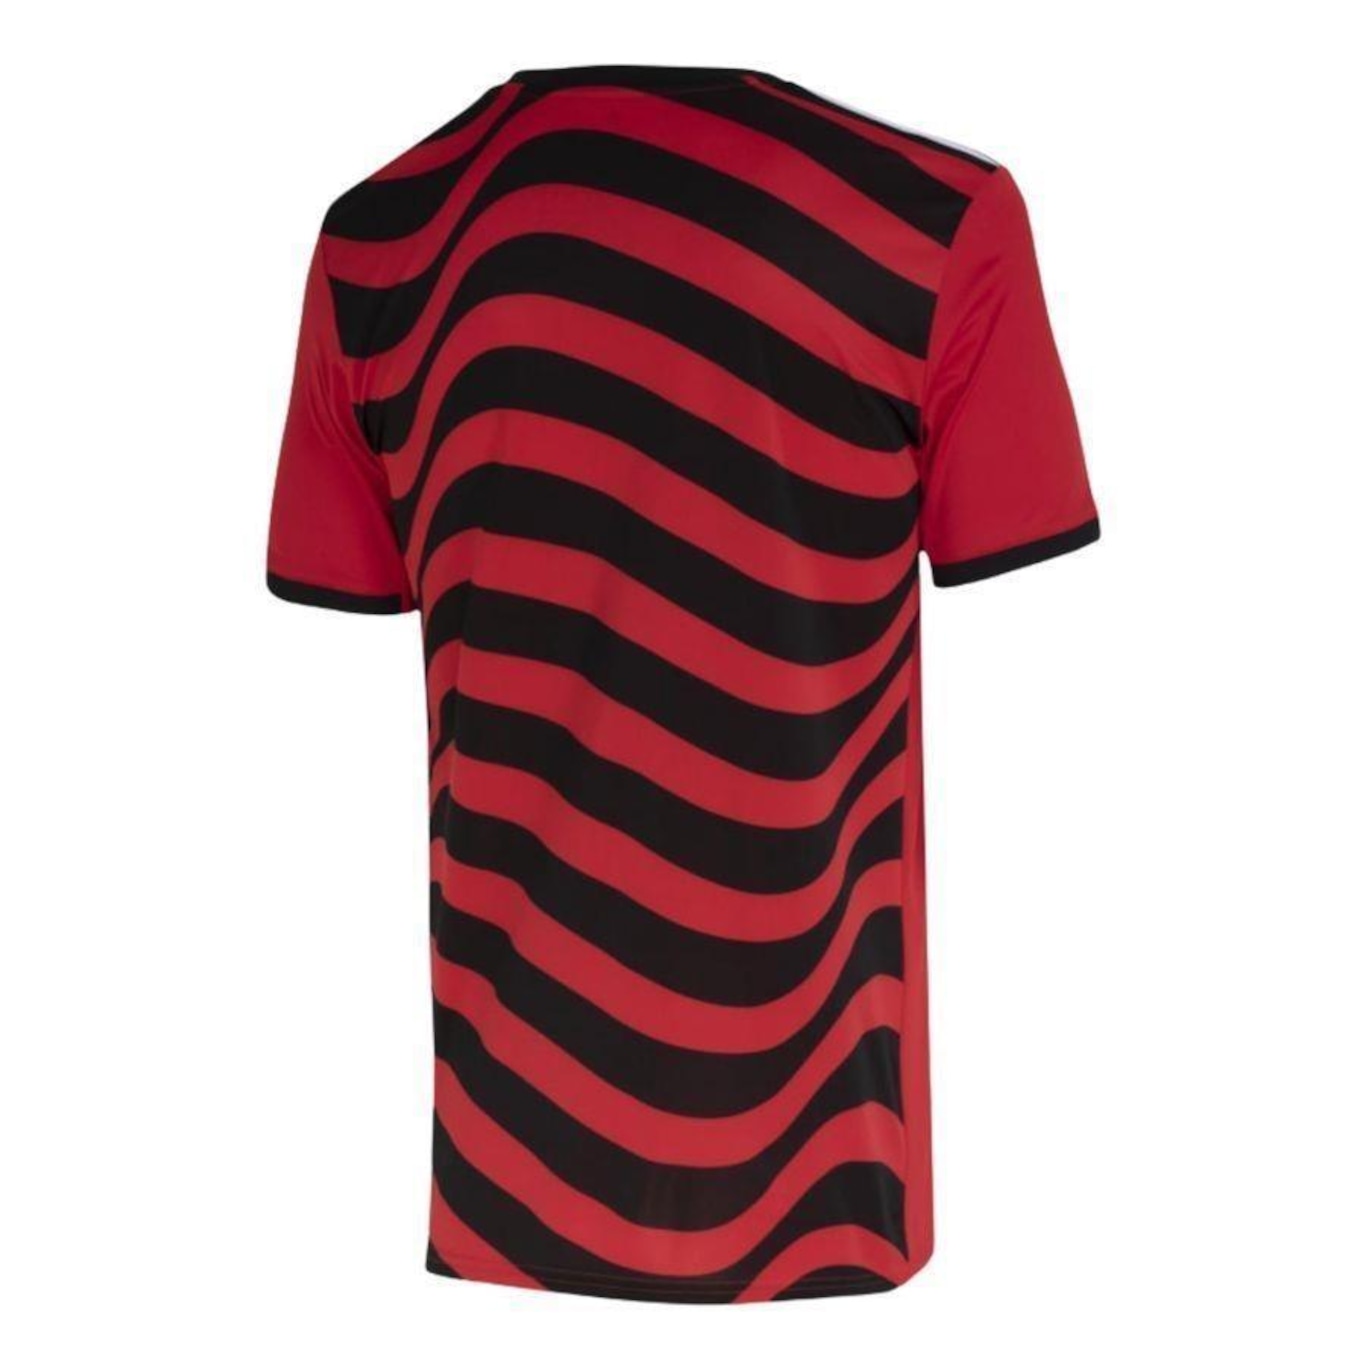 Venda de nova terceira camisa do Flamengo começa nesta quarta